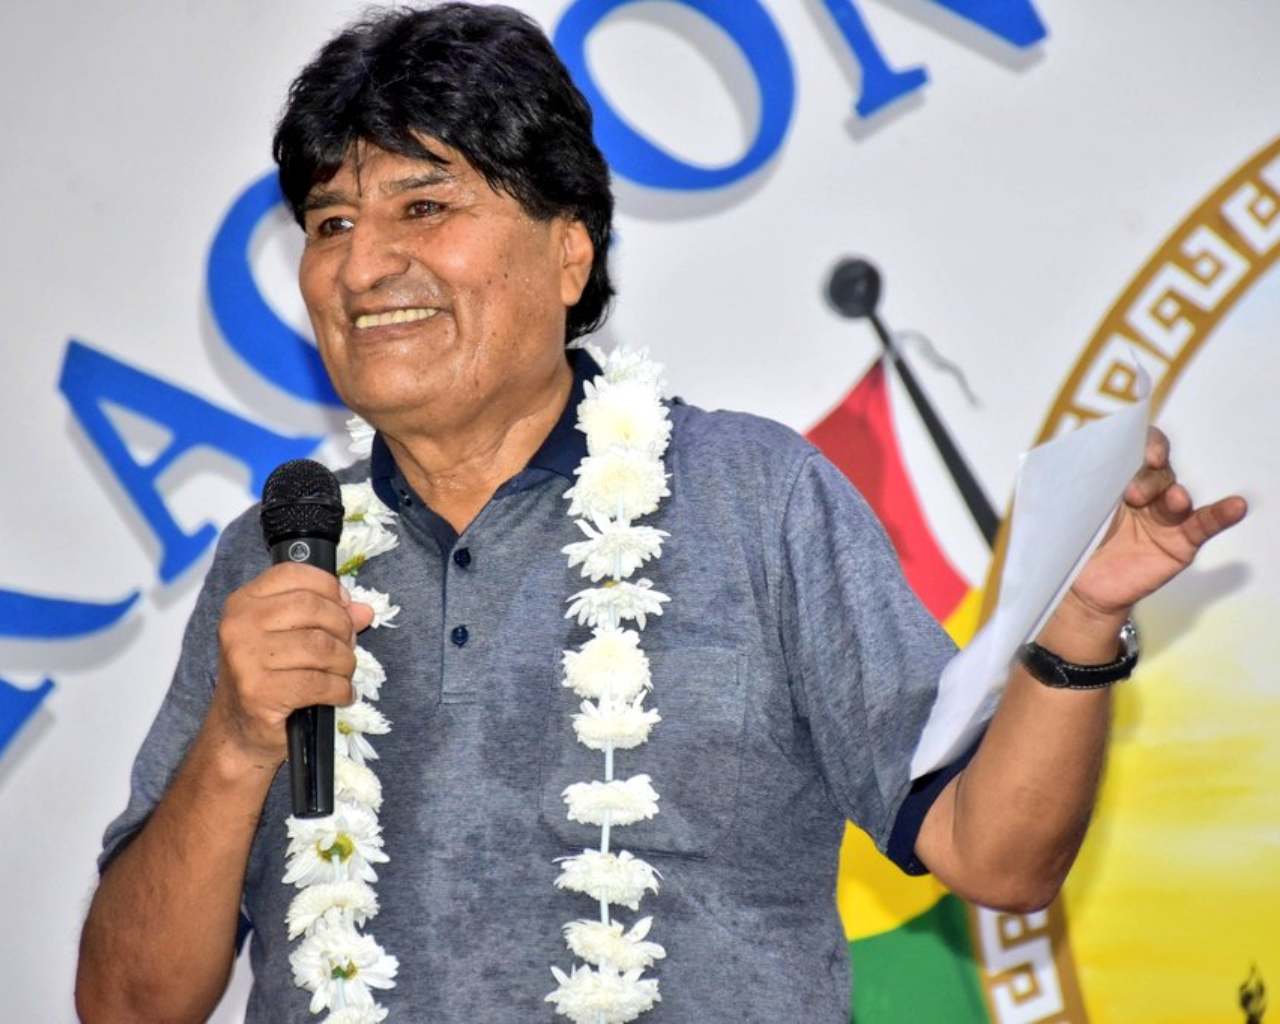 Primer Presidente del Estado Plurinacional de Bolivia.